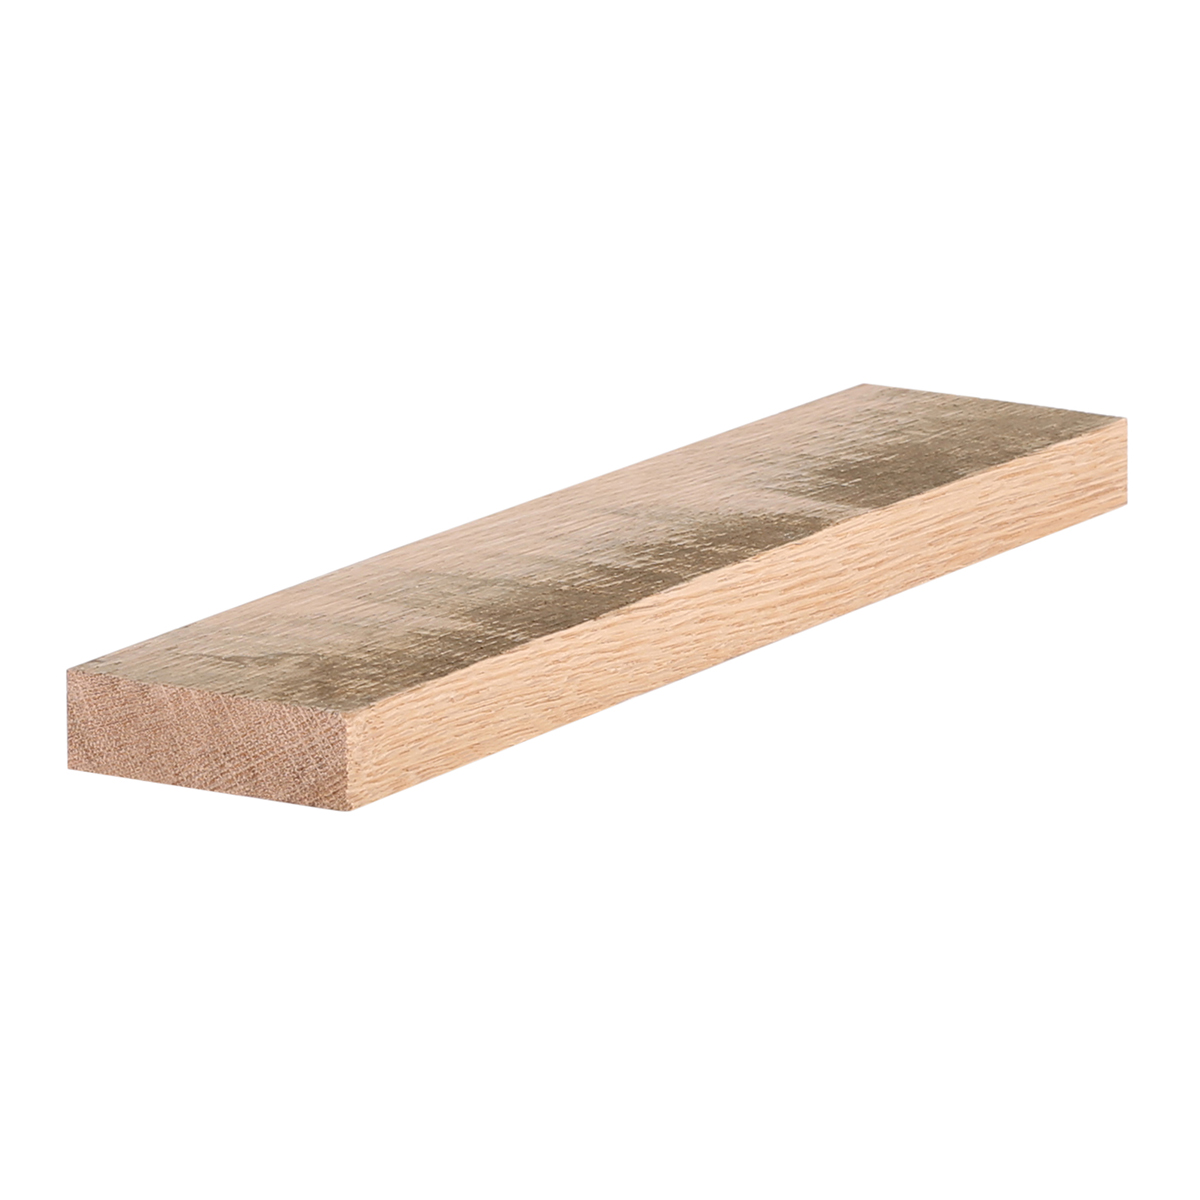 1x3 (3/4" x 21/2") Antique Oak S4S Lumber, Boards, & Flat